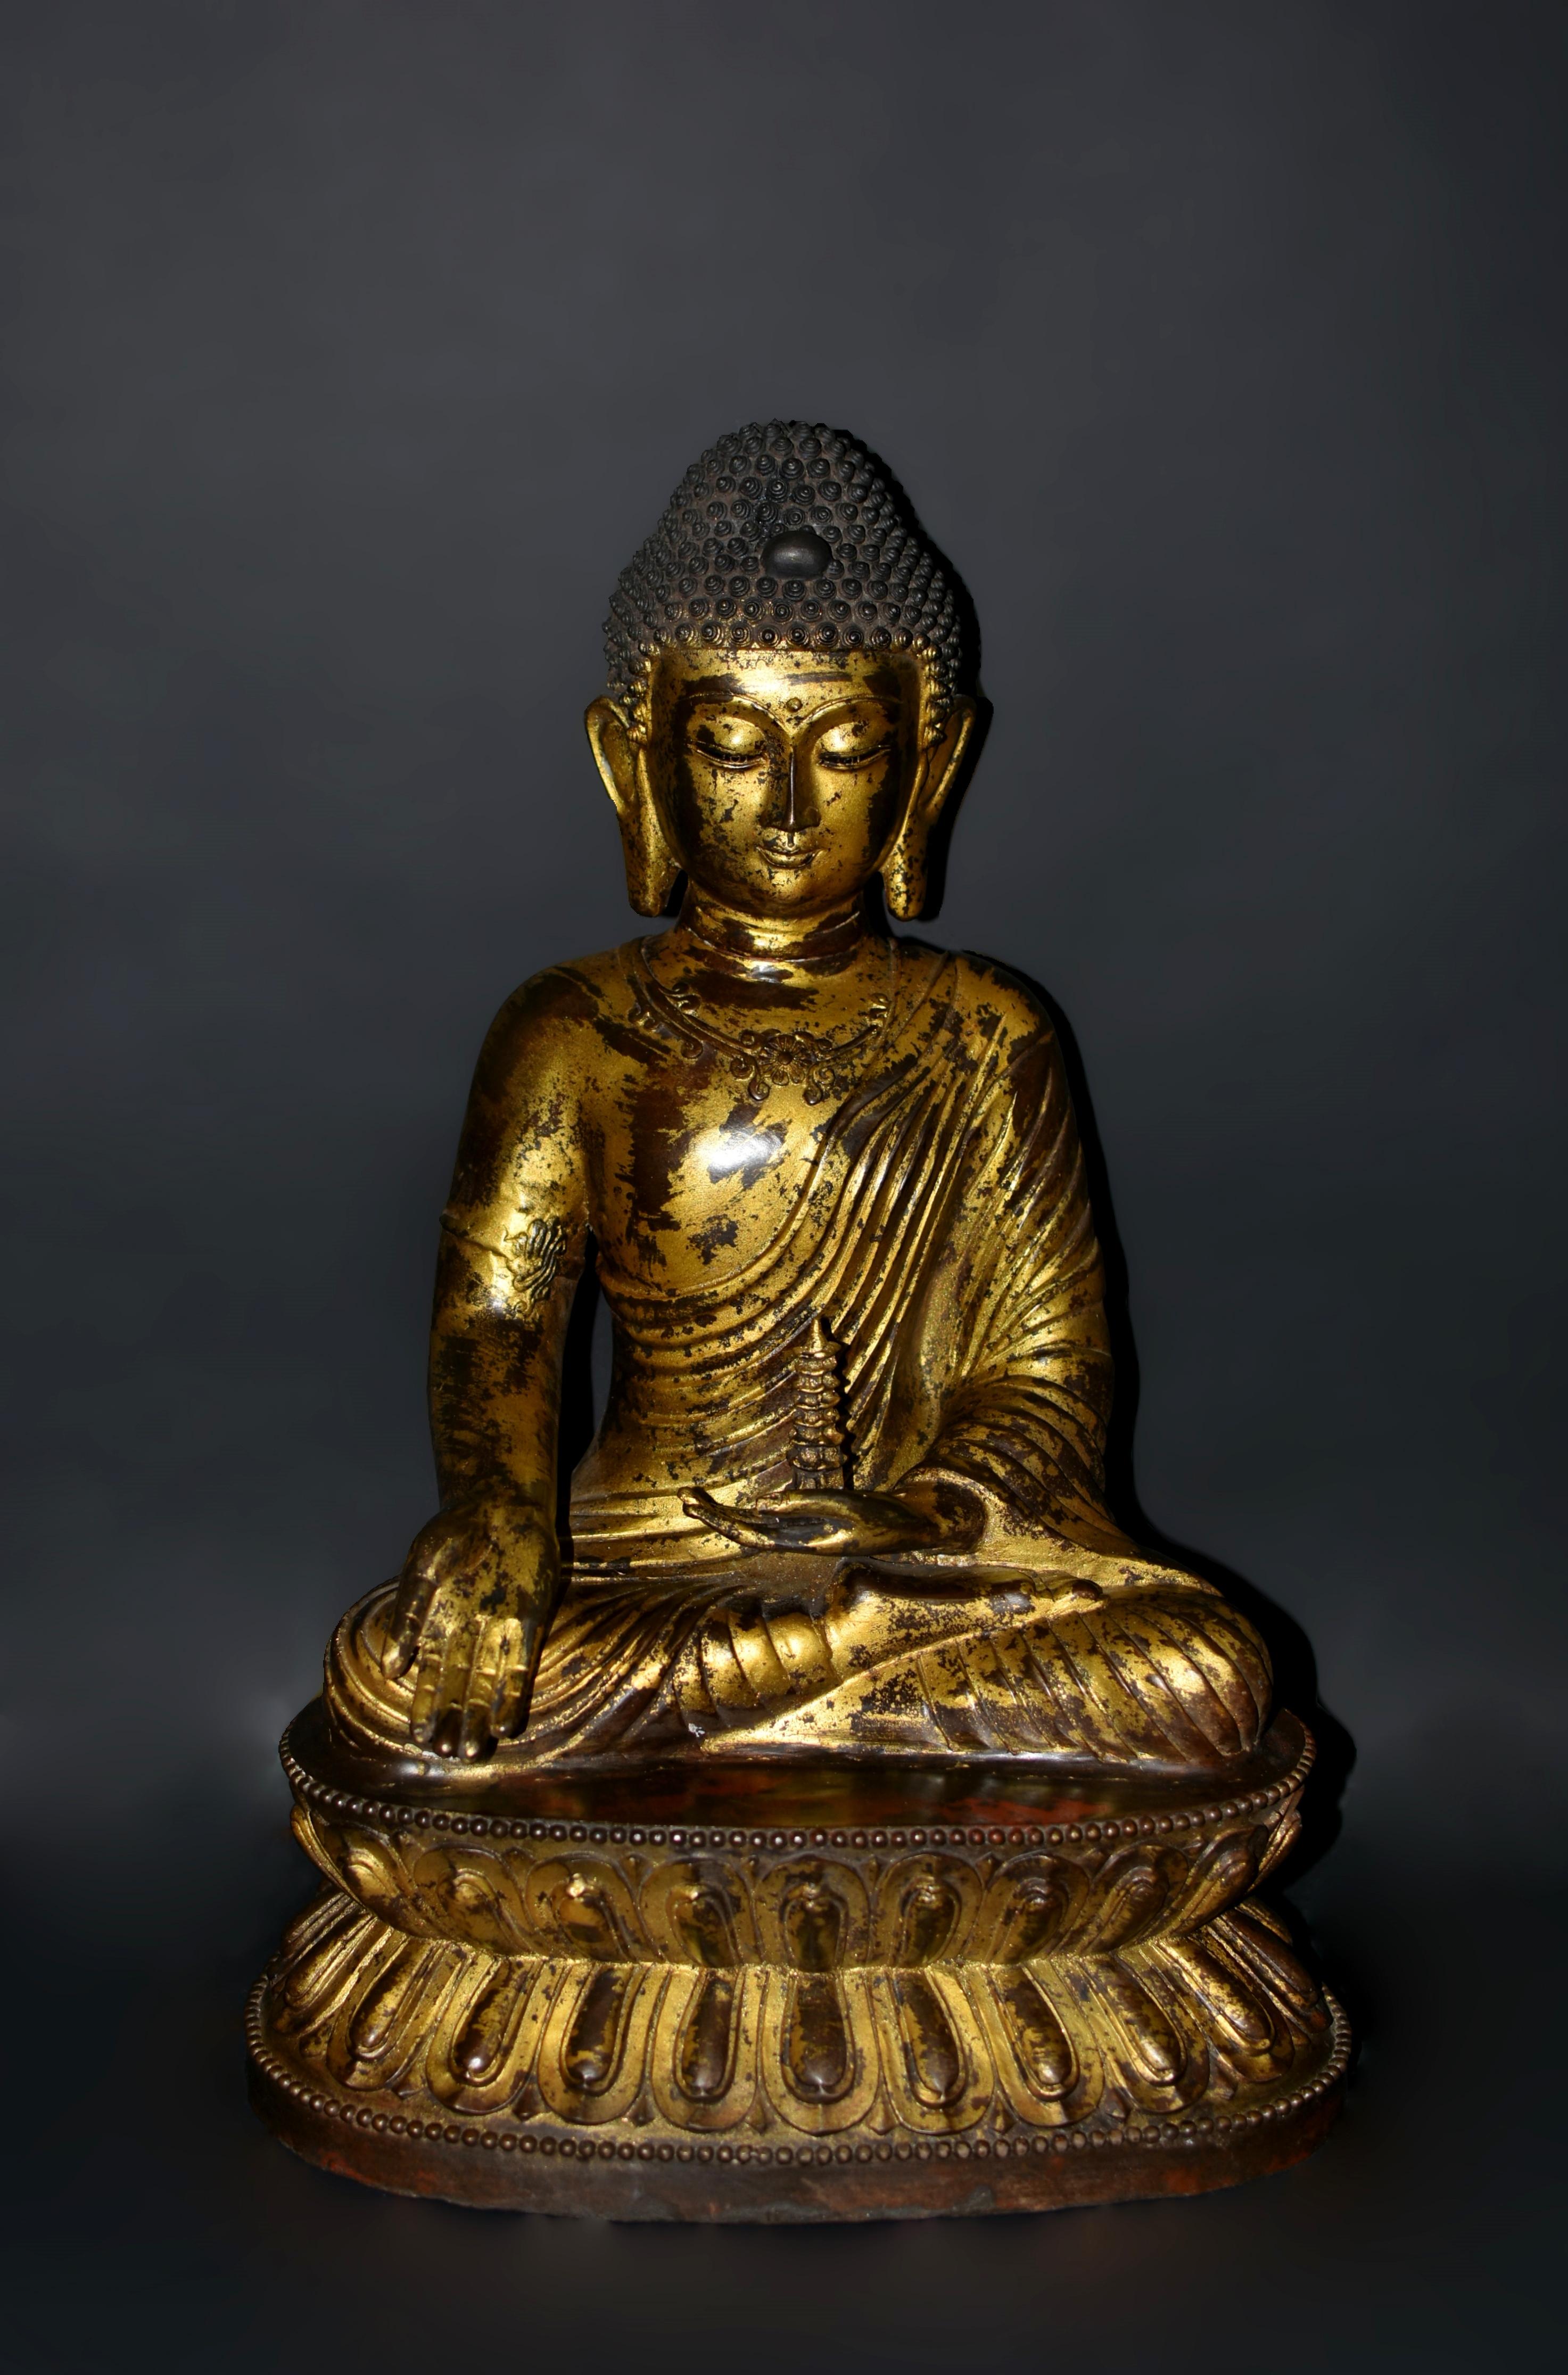 Die prächtige, 31 Pfund schwere Buddha-Statue aus Bronze, die im Stil der Ming-Dynastie gefertigt wurde, besticht durch ihre zeitlose Schönheit und ruhige Präsenz. Die Statue stellt den jungen Shakyamuni dar und strahlt mit ihren niedergeschlagenen